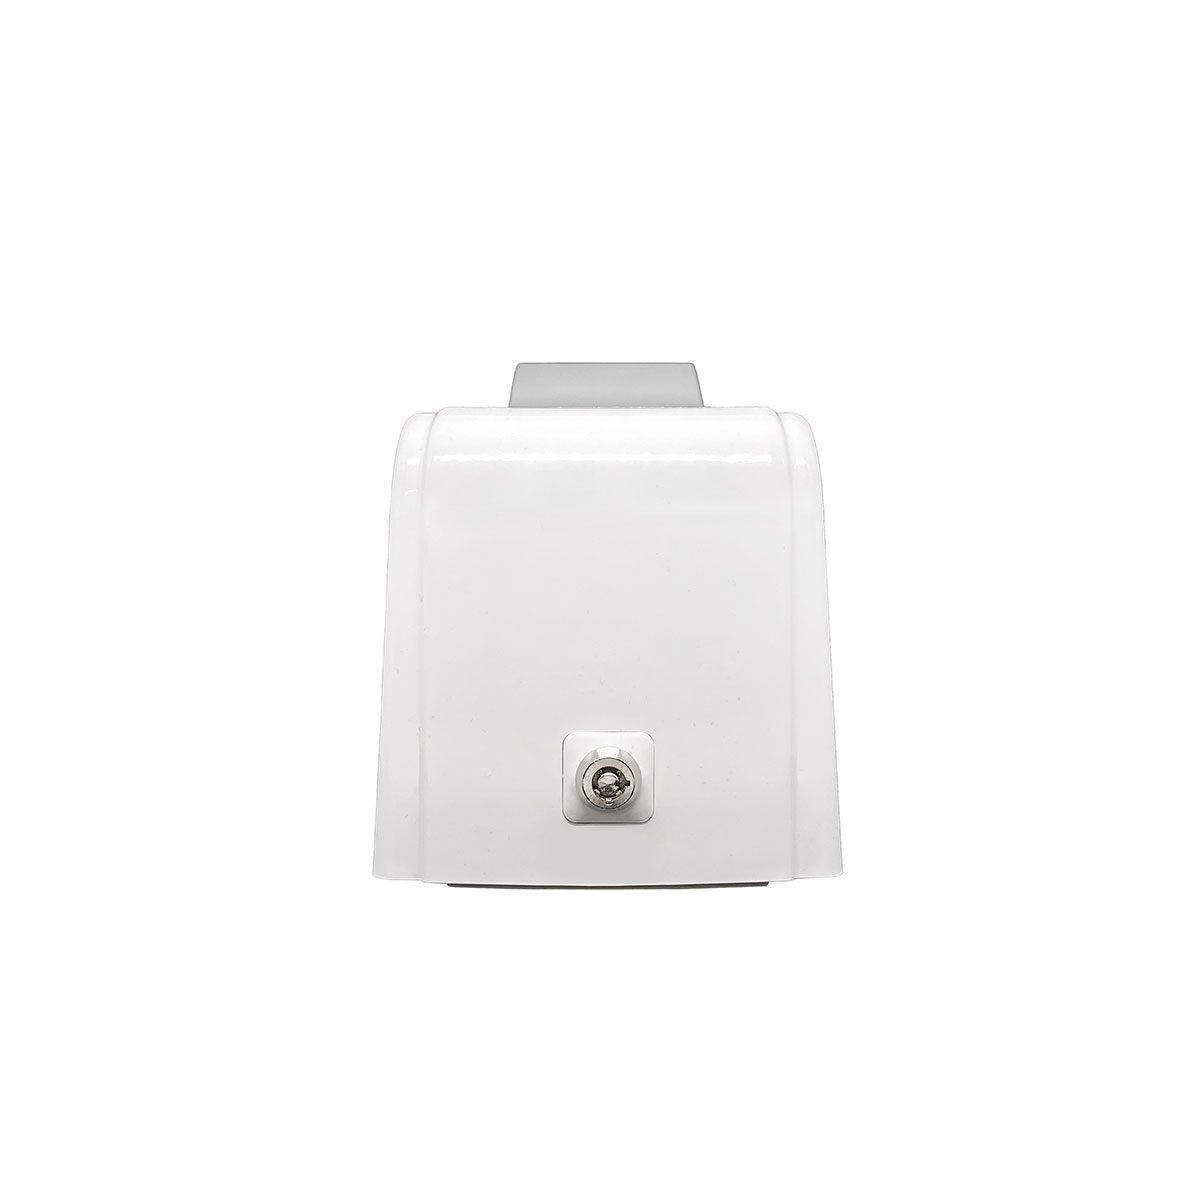 Дозатор для жидкого мыла X7 нажимной 0,7 л БИЗНЕС, корпус белый, стекла и кнопка прозрачные фото 3